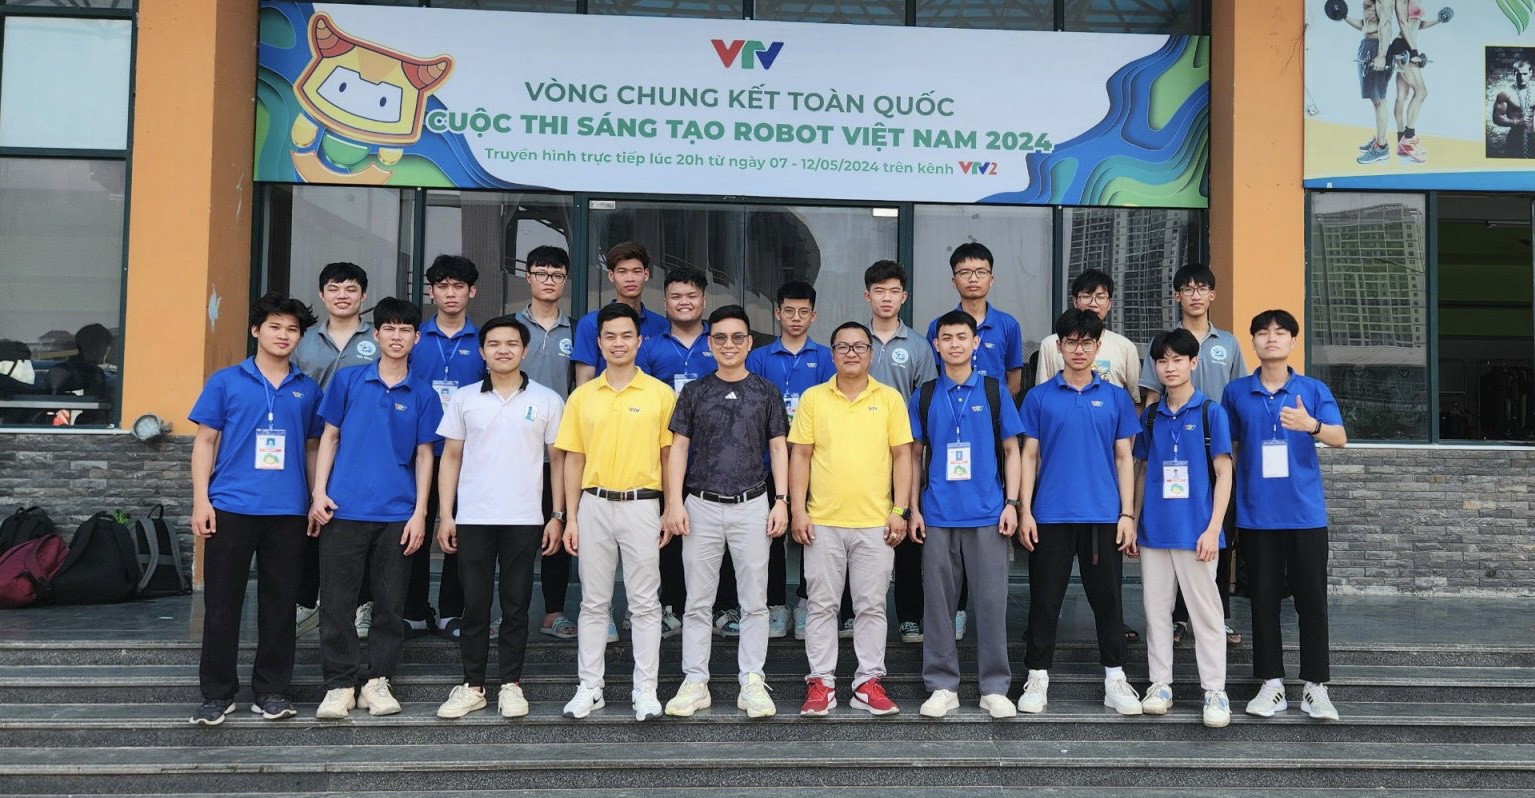 Vòng chung kết toàn quốc Robocon Việt Nam 2024 gọi tên DCN-SMAE1 và DCN-SMAE 2